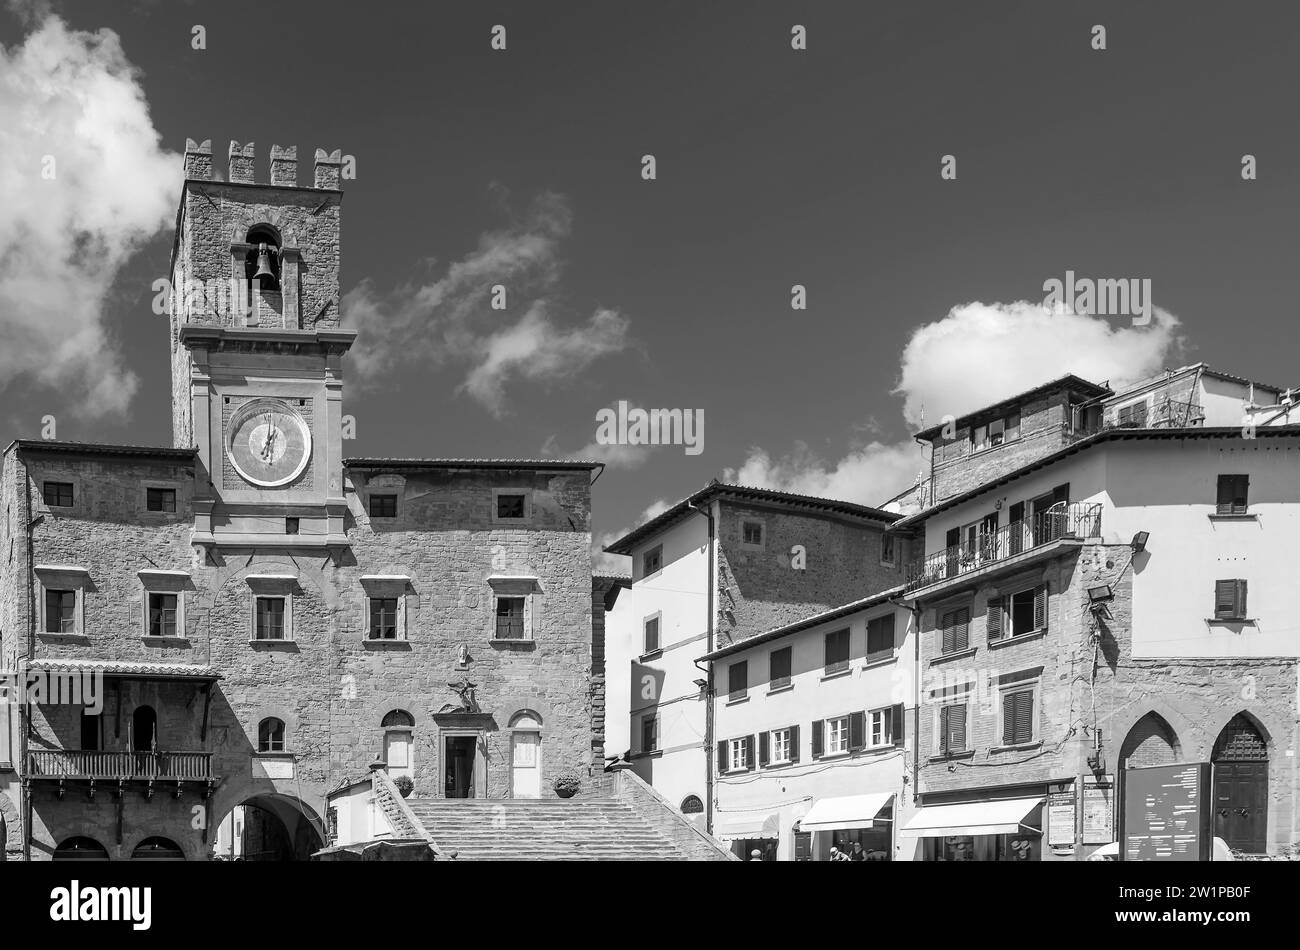 Piazza della Repubblica square in the historic center of Cortona, Arezzo, Italy, in black and white Stock Photo